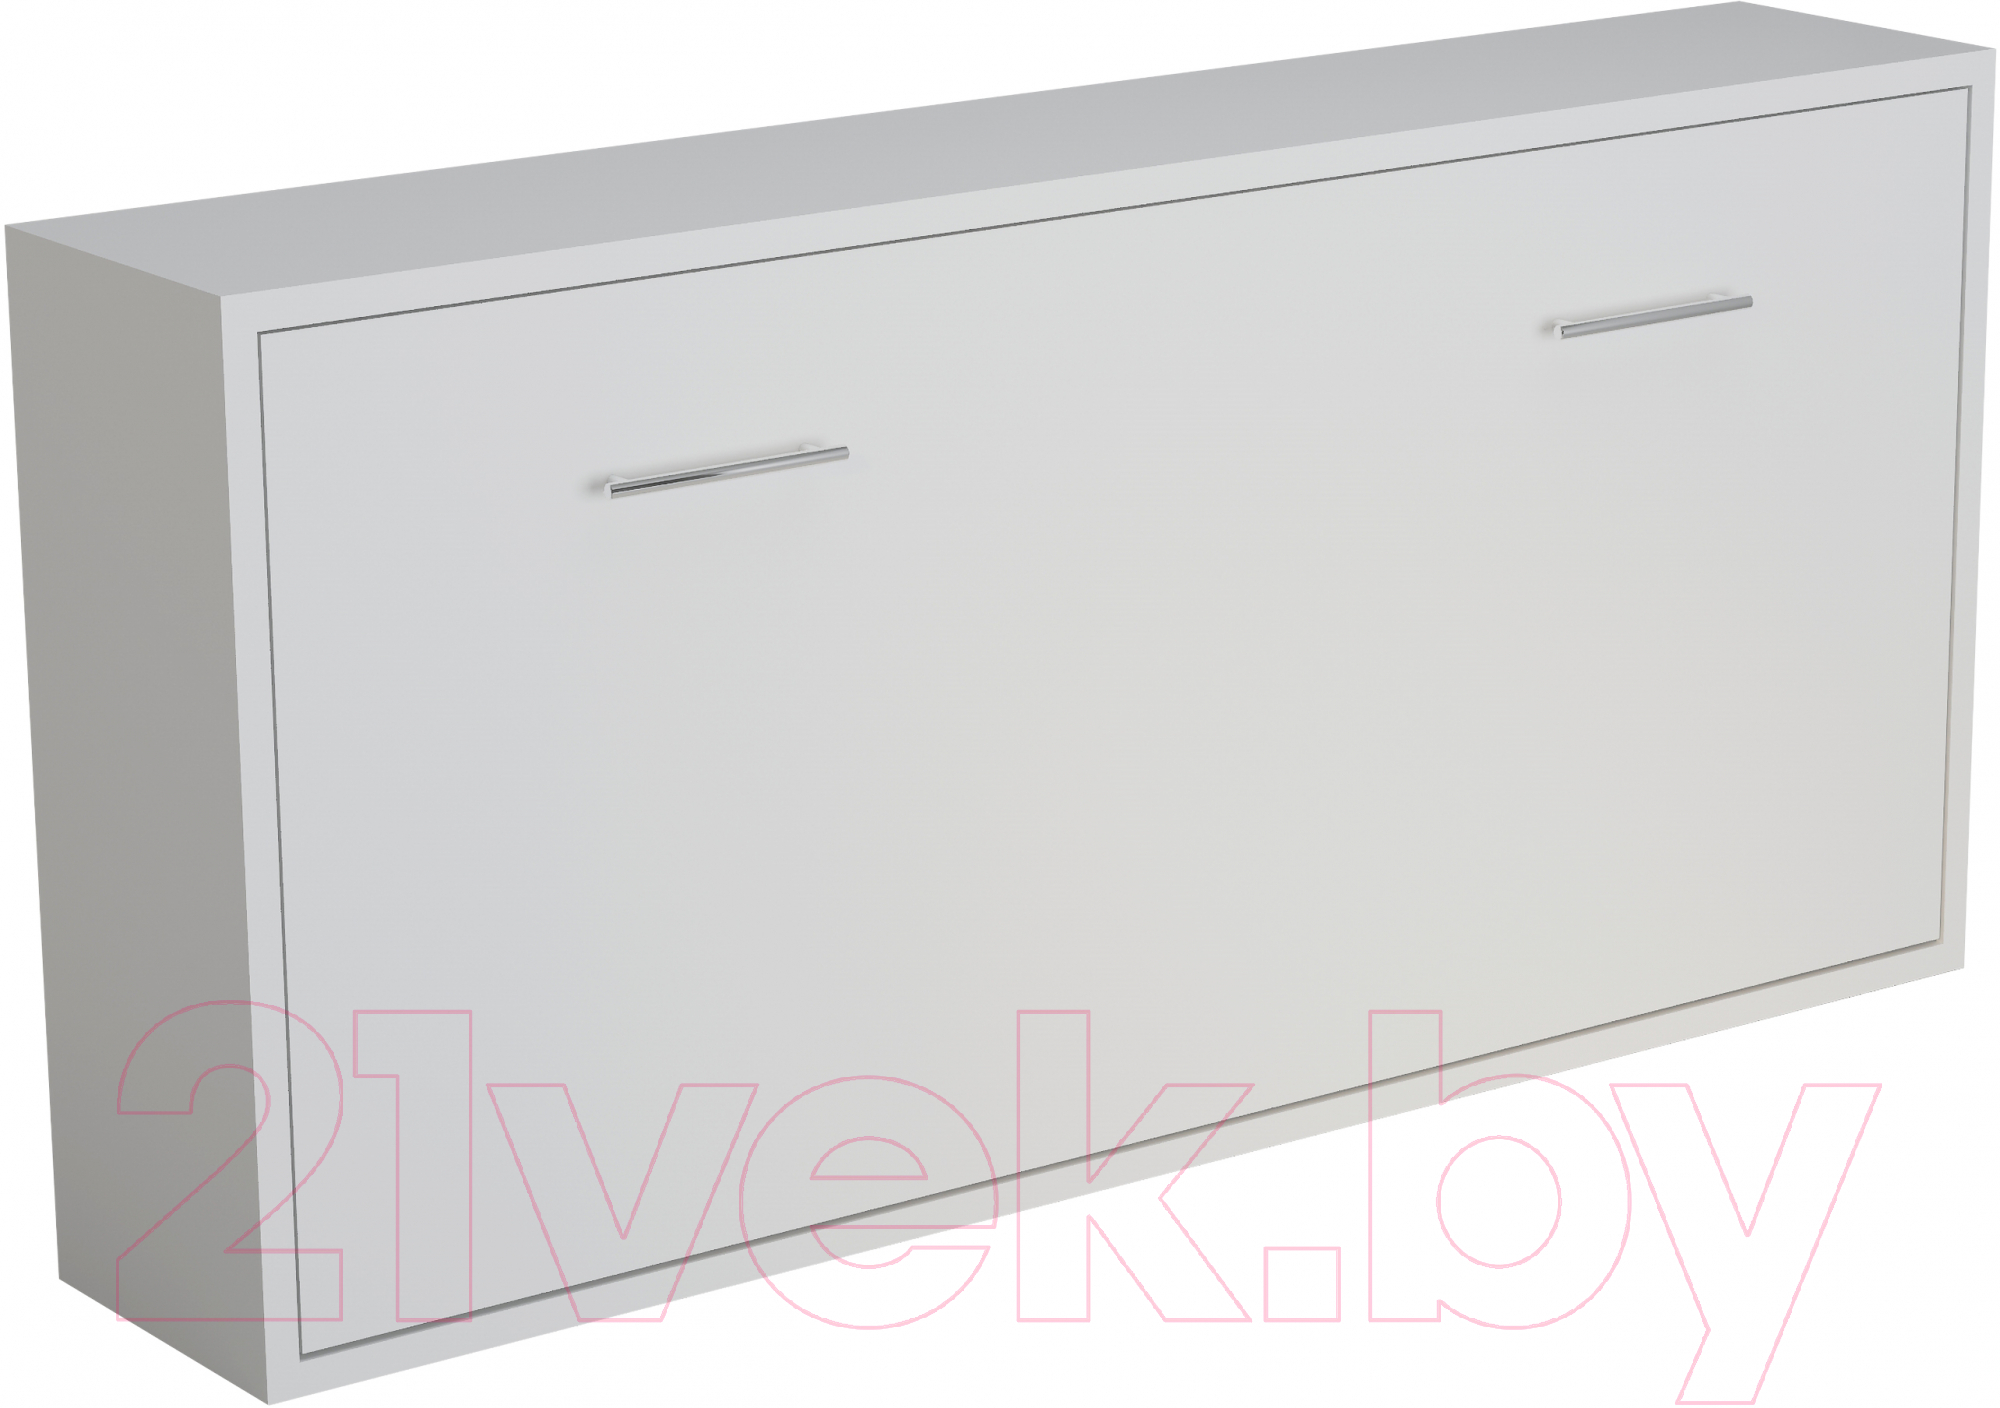 Шкаф-кровать трансформер Макс Стайл Wave 36мм 90x200 (белый базовый W908 ST2)